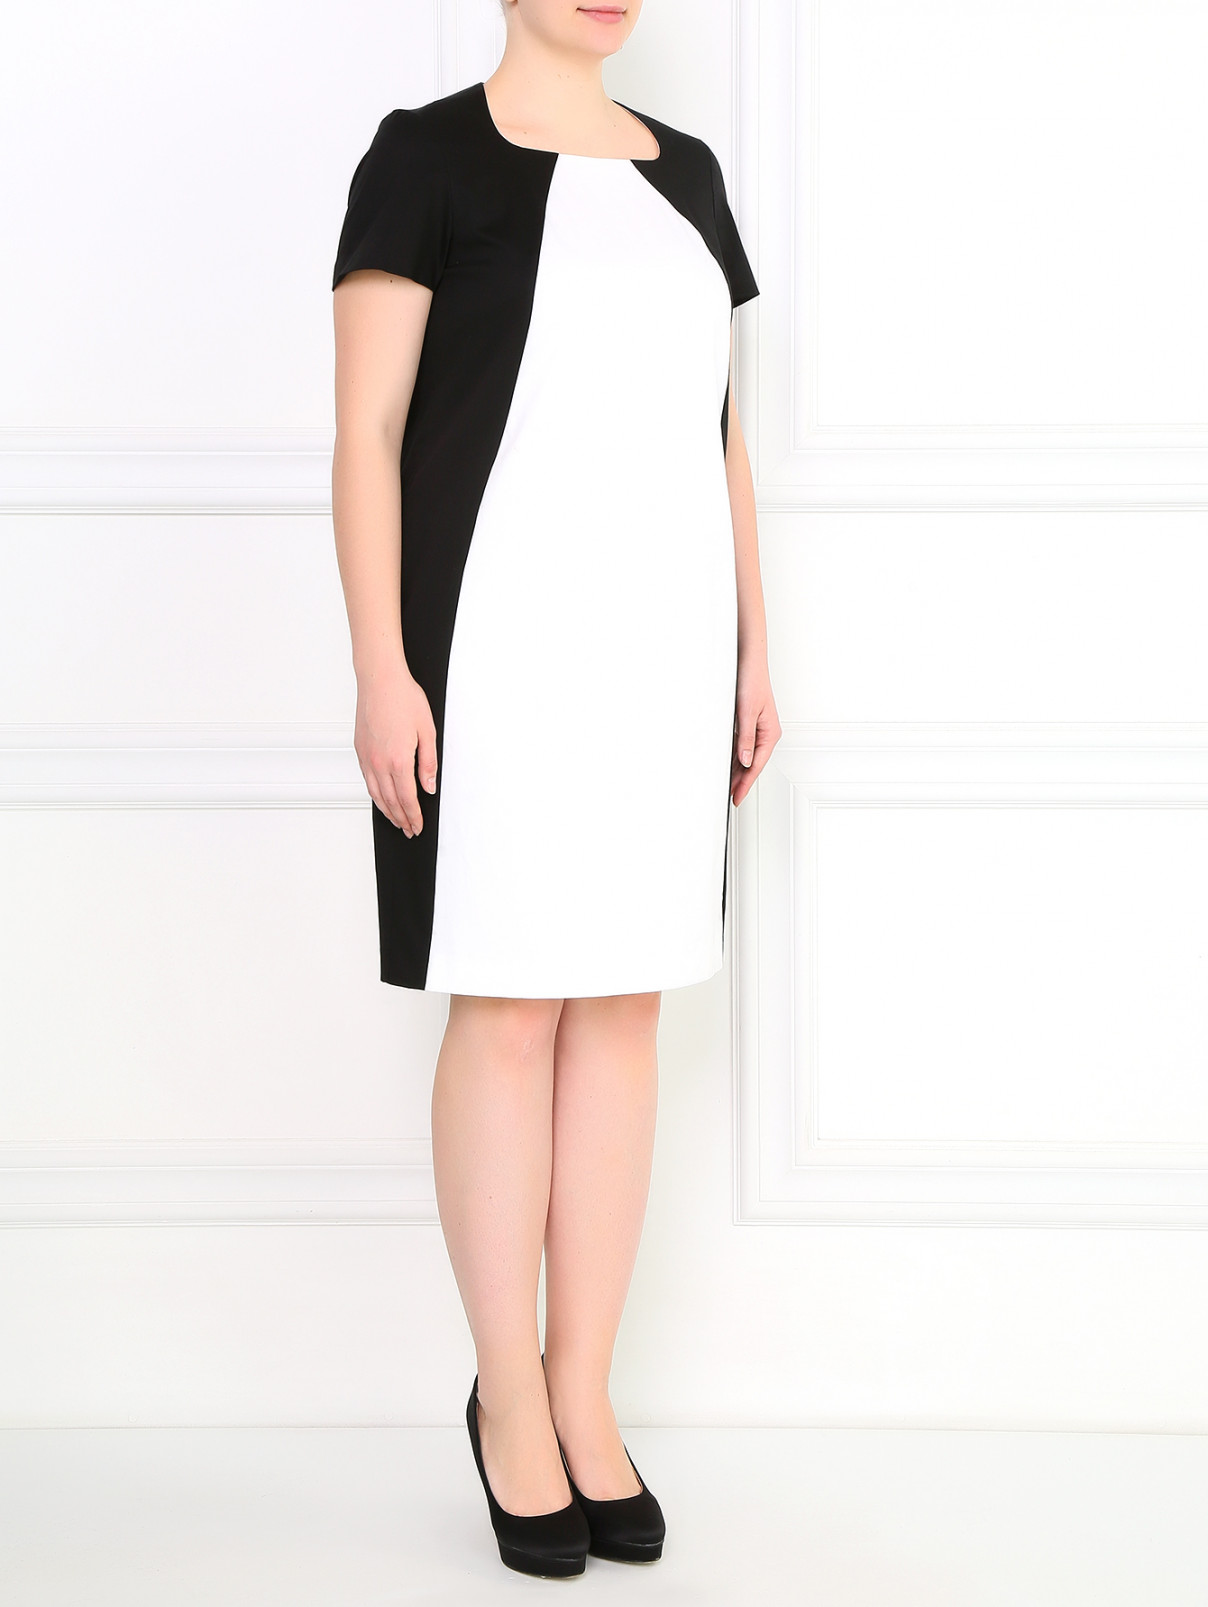 Платье-футляр из хлопка Marina Rinaldi  –  Модель Общий вид  – Цвет:  Черный